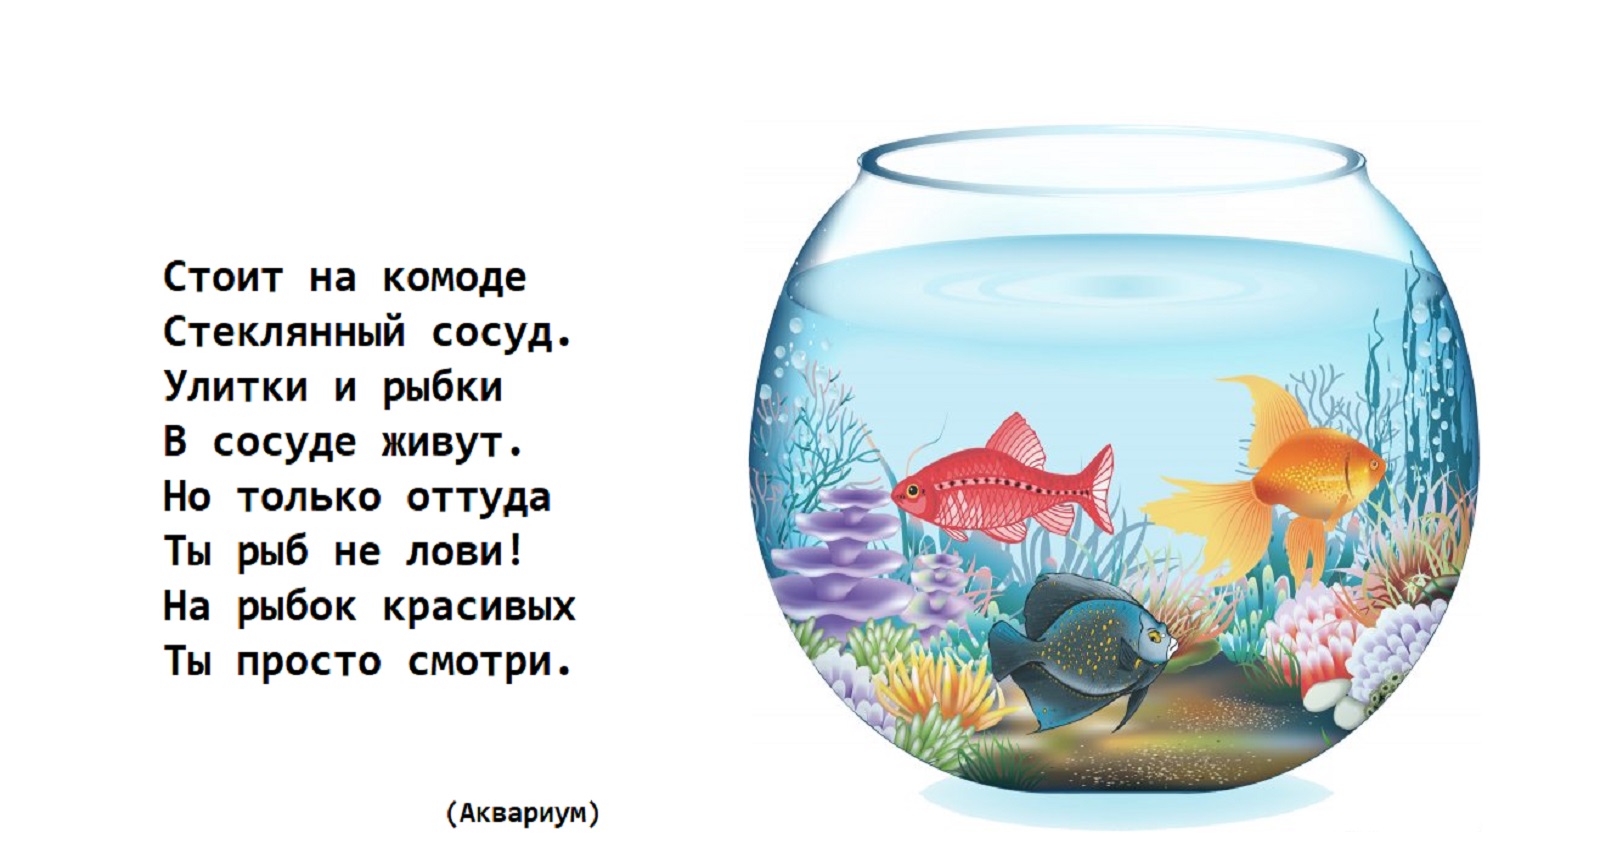 Загадки Про аквариум для детей | Загадки с ответами